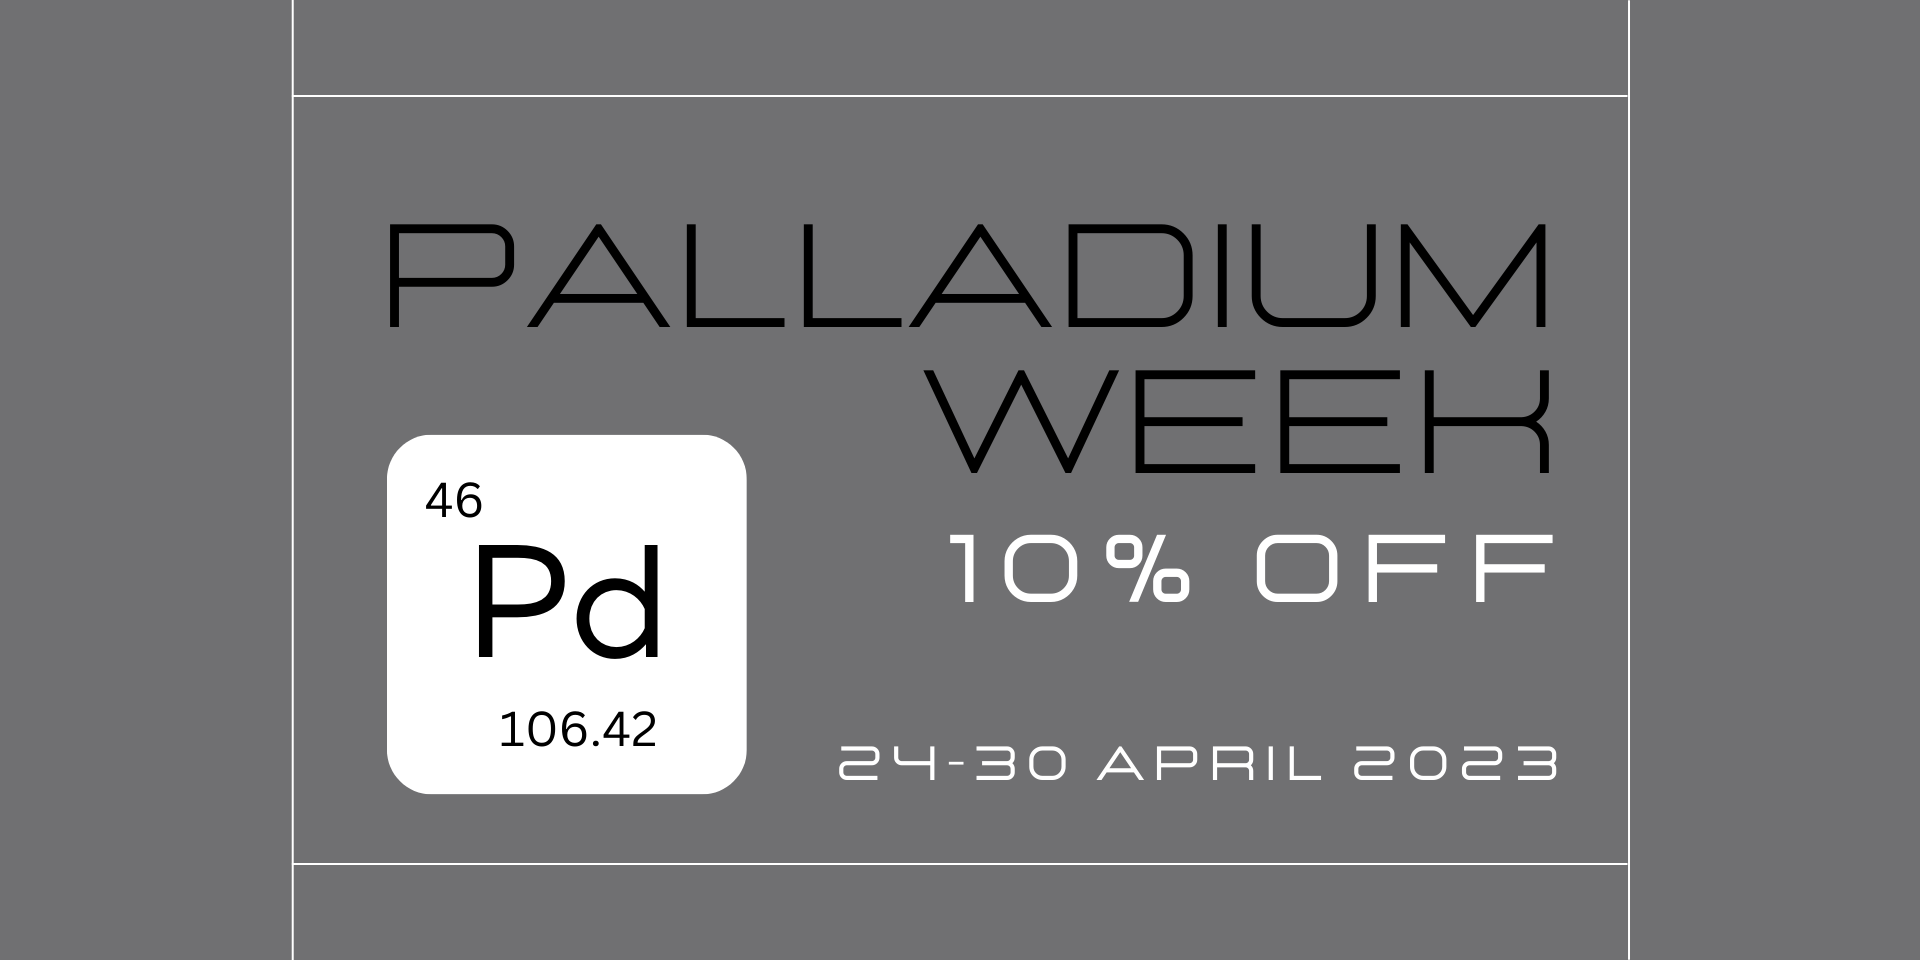 Palladium Week Promo